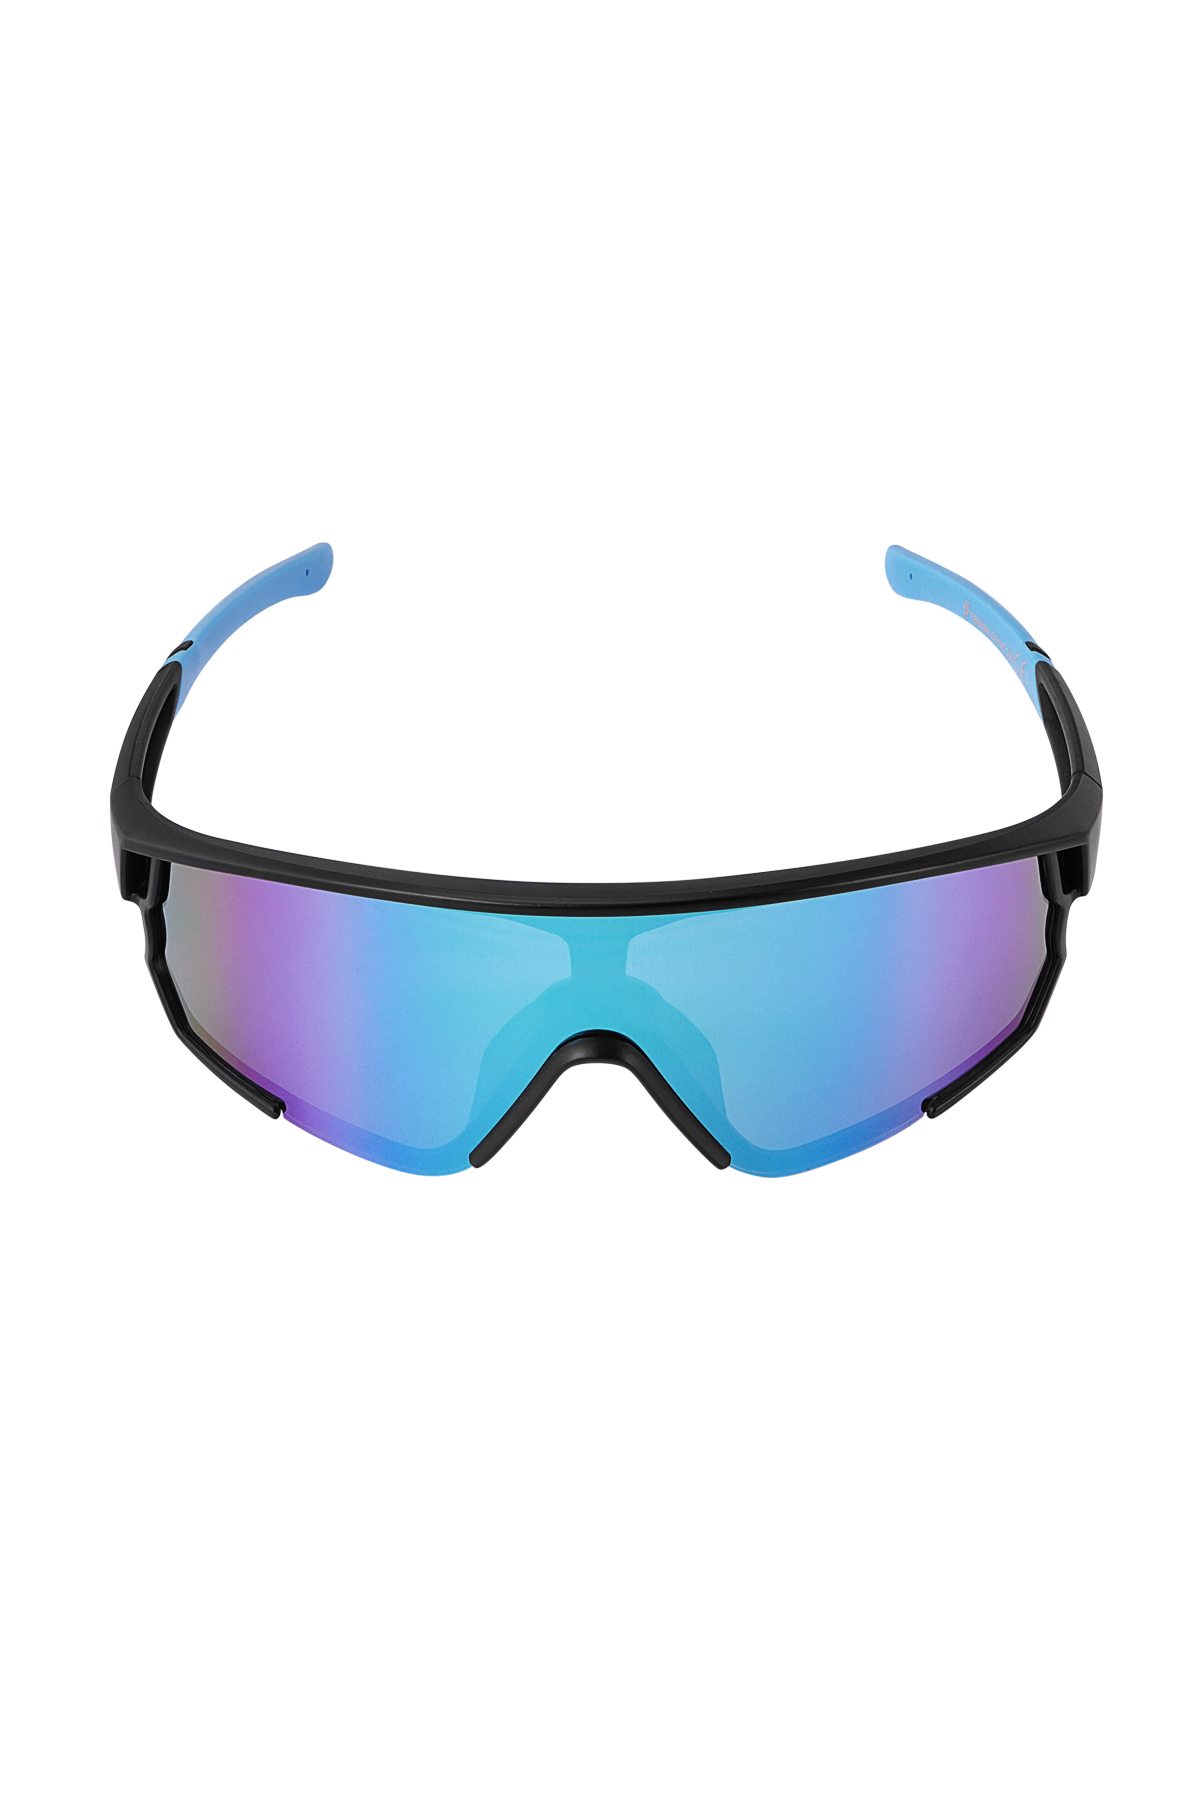 Sonnenbrille mit farbigen Gläsern – schwarz/blau Bild6